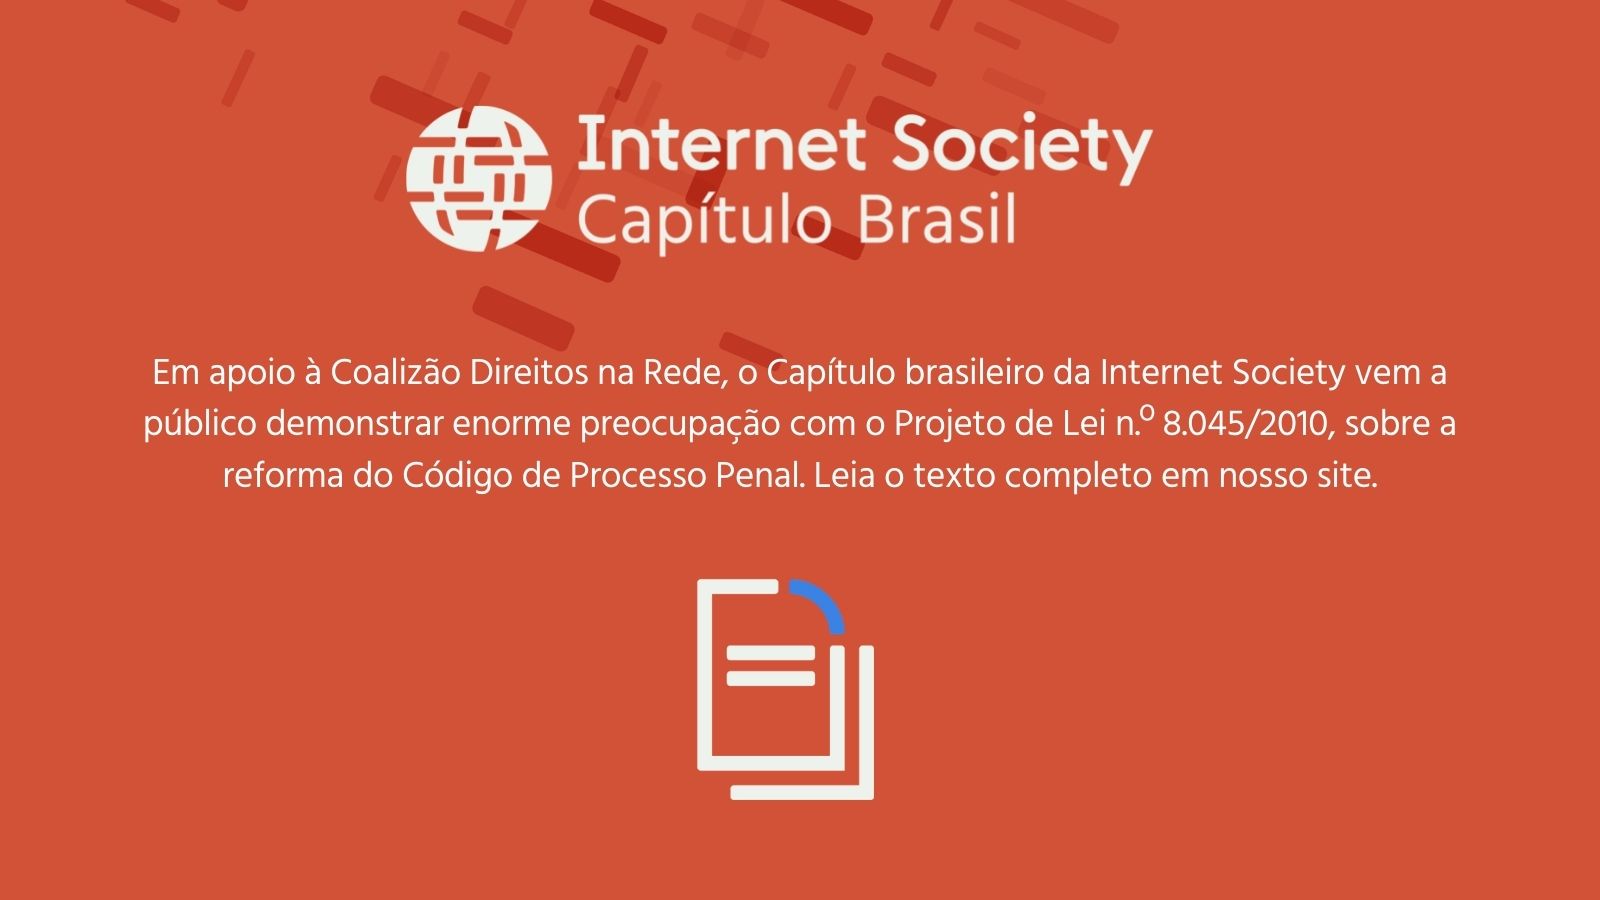 Apoio do Capítulo Brasileiro à Coalizão Direitos na Rede sobre enorme preocupação com o Projeto de Lei n.º 8.045/2010